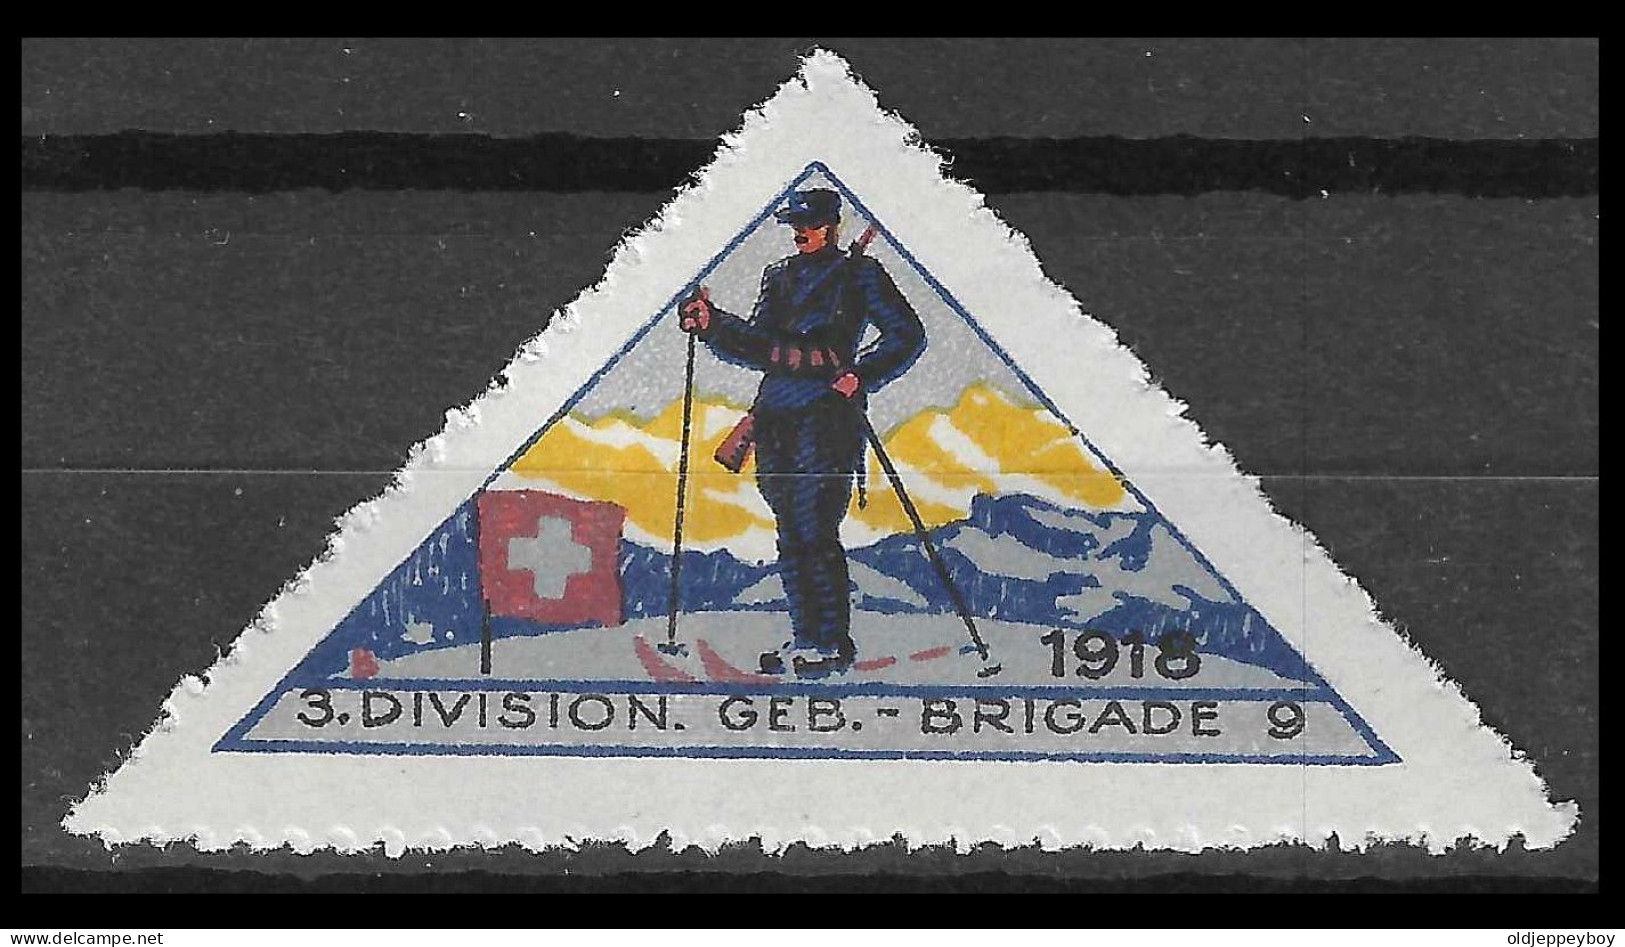 Uisse // Poste Militaire // Vignette-timbre // 1914-1918 // 3.Division ,Geb.-Brigade 9 No.135 - Labels